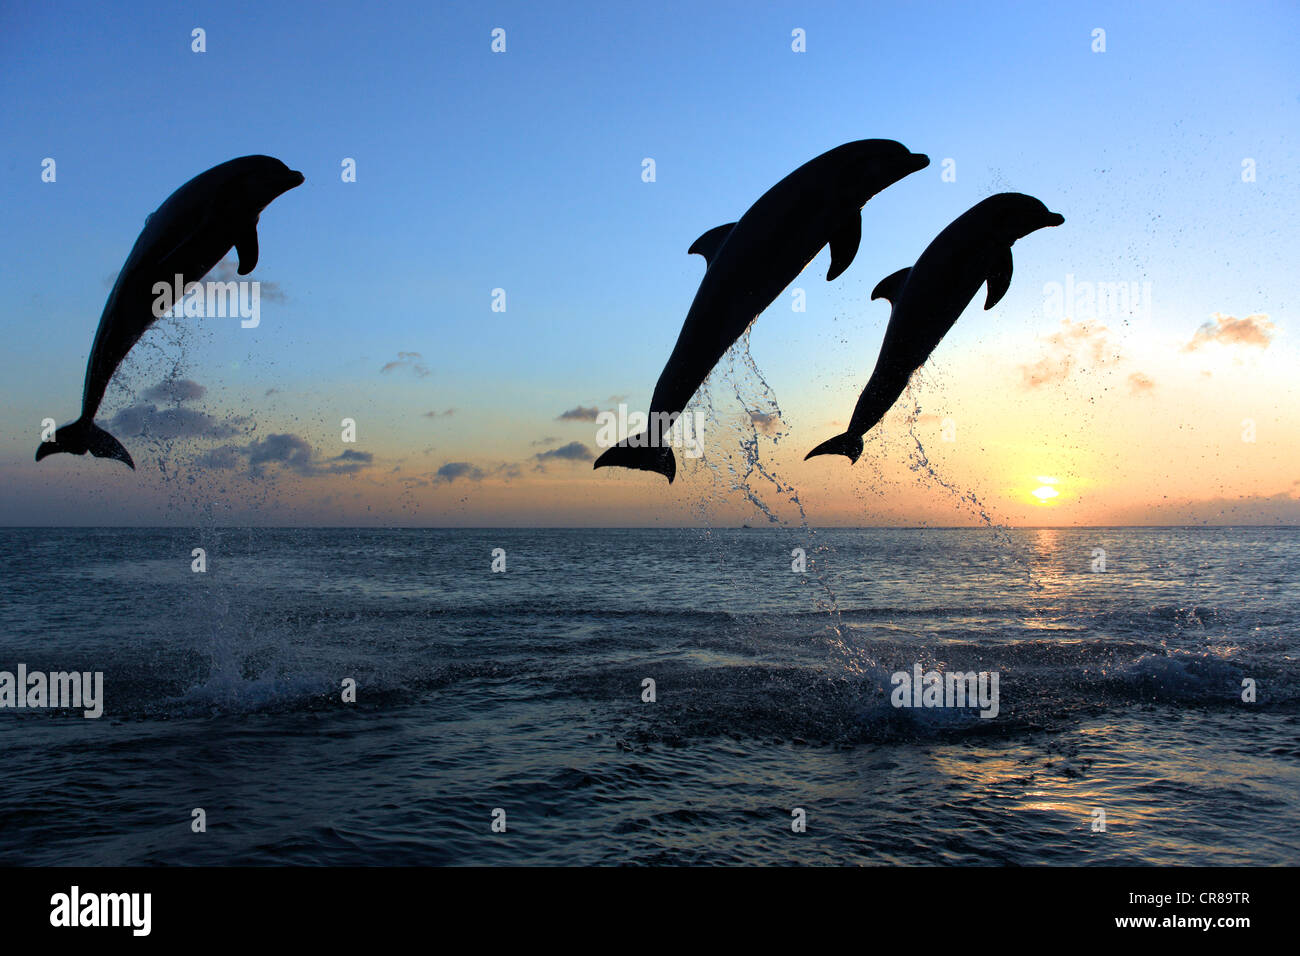 Tres delfines nariz de botella (Tursiops truncatus), adulto, saltando al atardecer, Roatán, Honduras, El Caribe, América Central Foto de stock